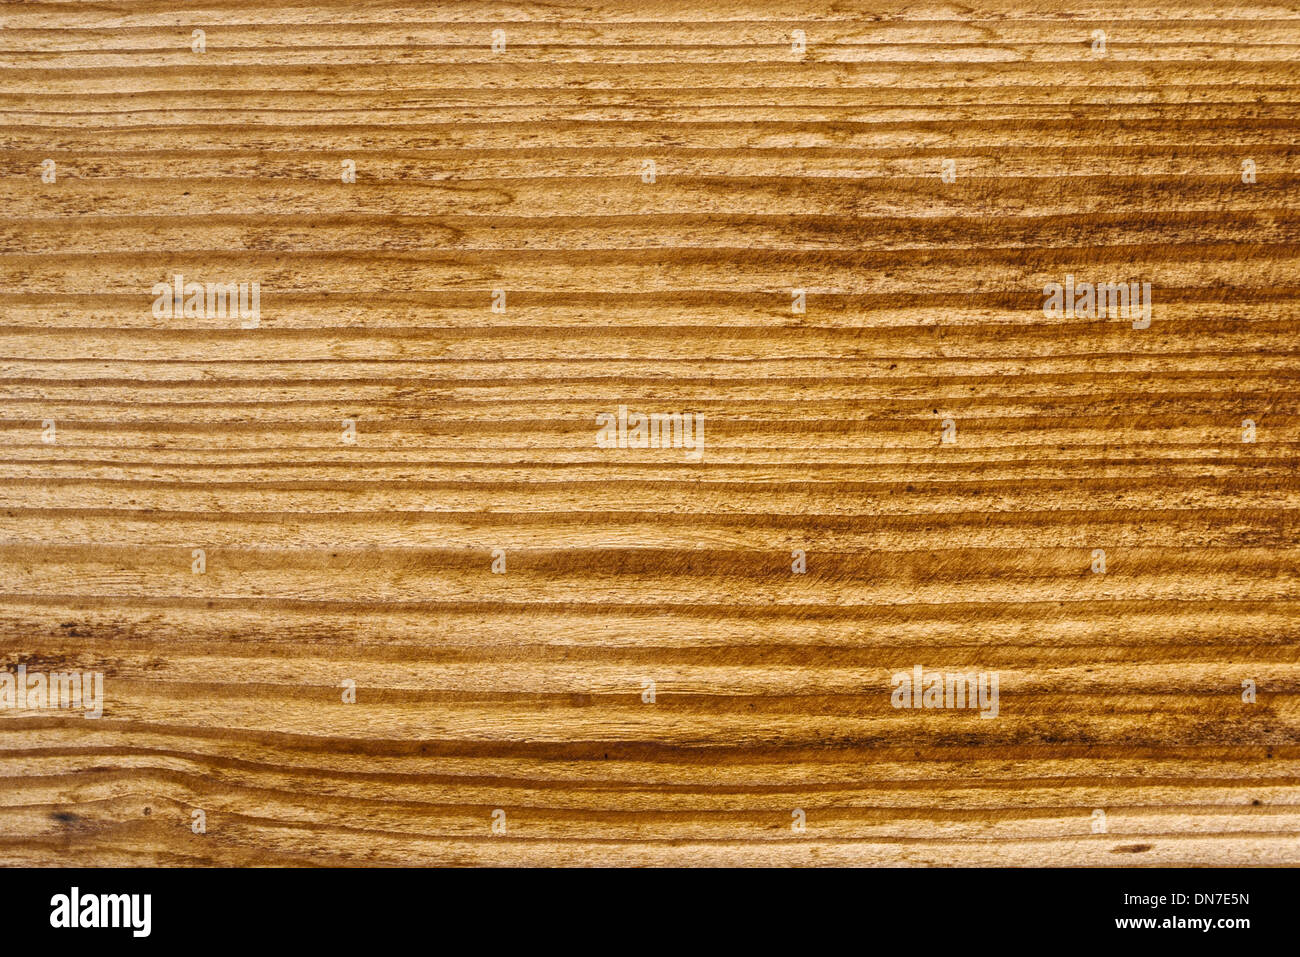 Legno di quercia texture. Dettagliata quercia vecchia struttura come il legno naturale dello sfondo. Foto Stock